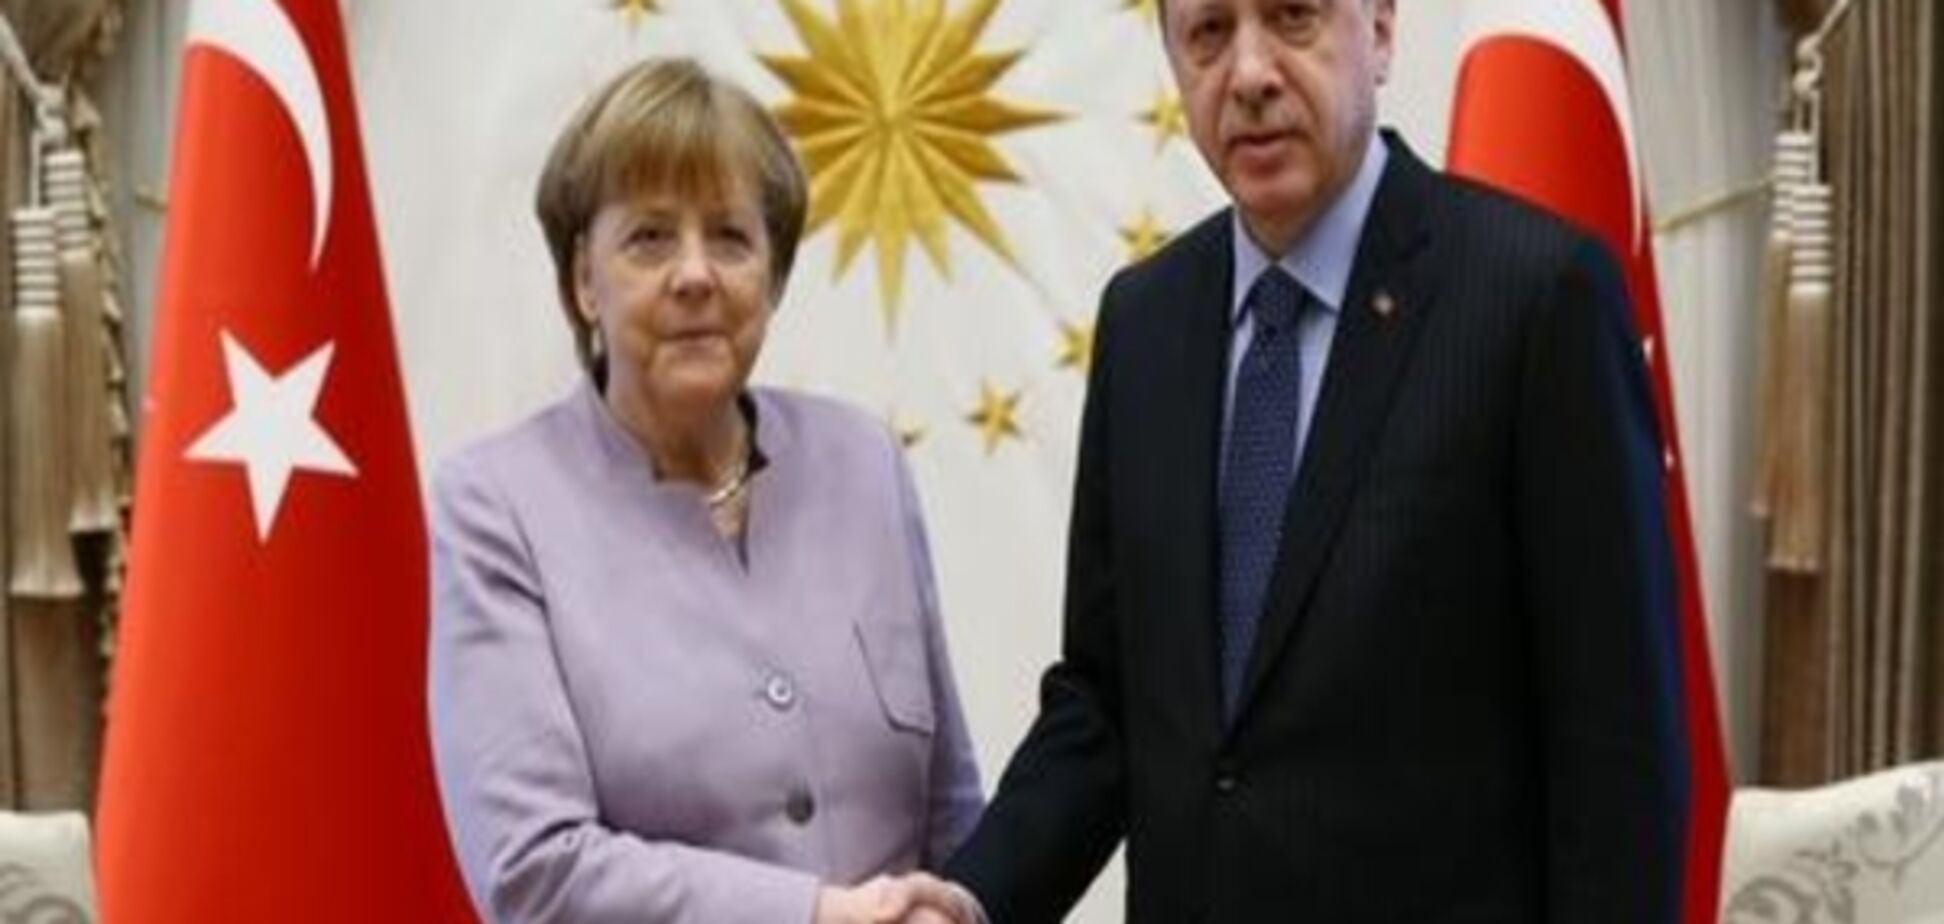 Меркель нагадала Ердоганові про свободу преси й демократичну роль опозиції